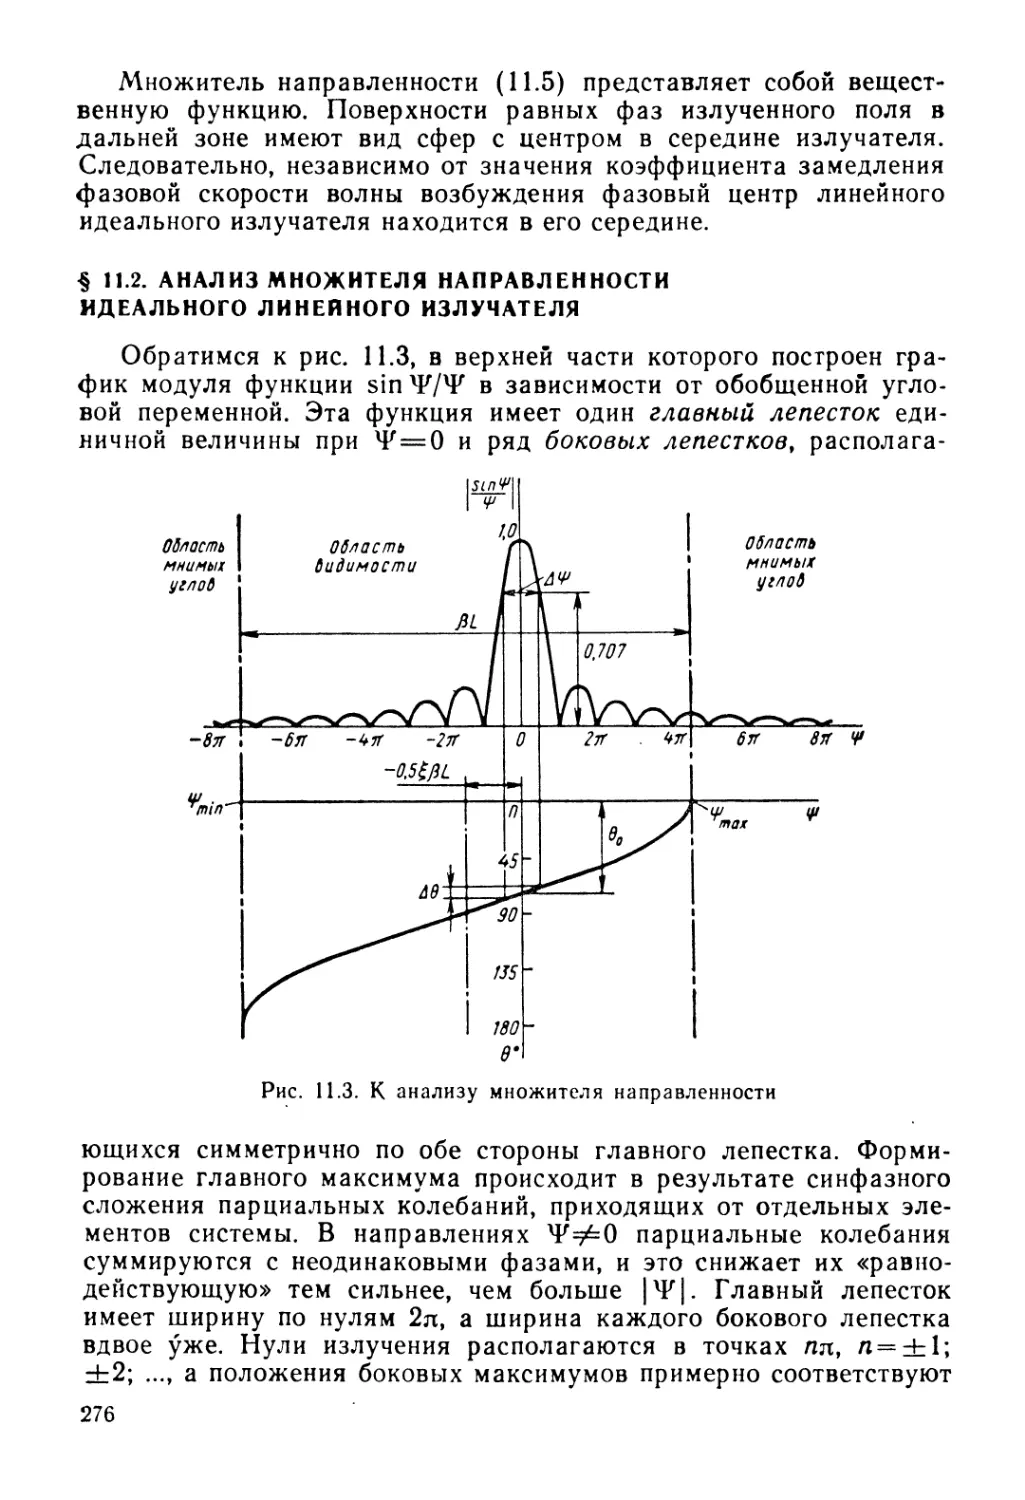 § 11.2. Анализ множителя направленности идеального линейного излучателя